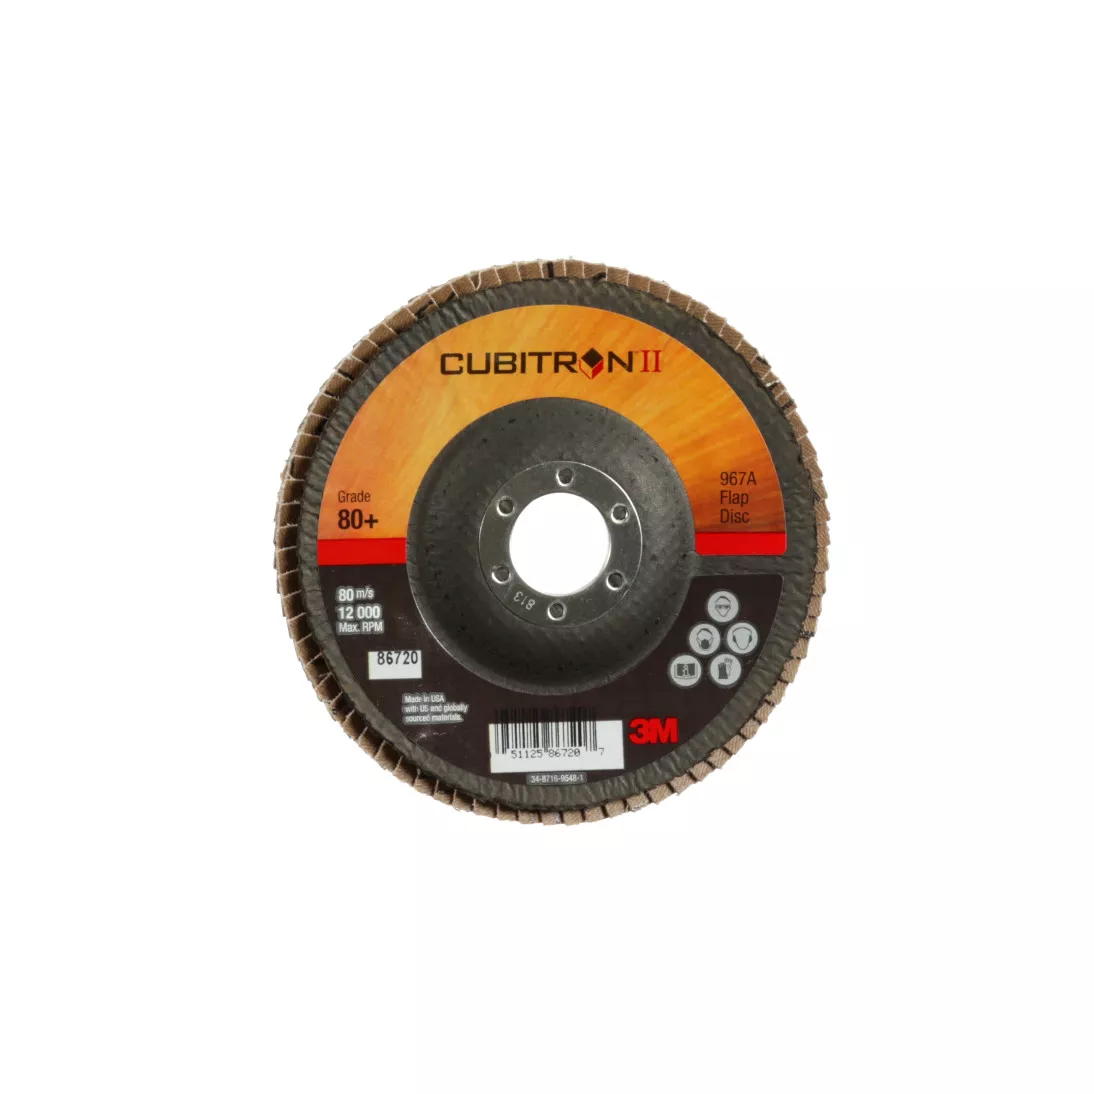 3M™ Cubitron™ II Flap Disc 967A, 80+, T29, 5 in x 7/8 in, 10 ea/Case